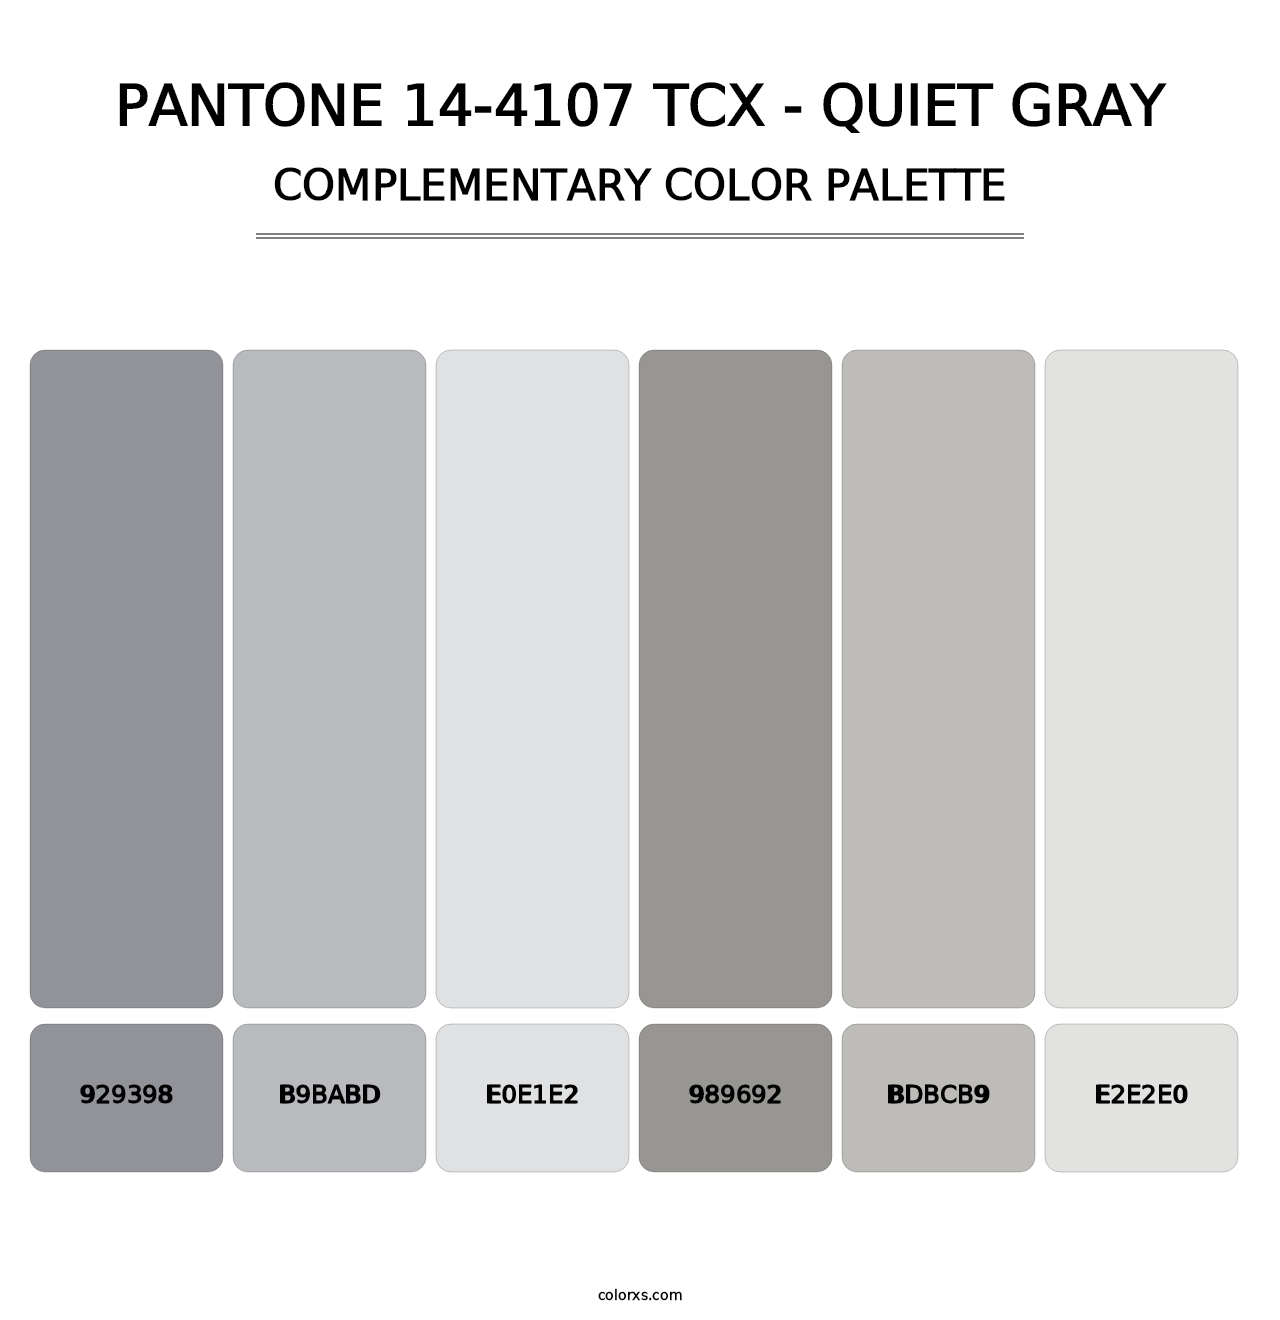 PANTONE 14-4107 TCX - Quiet Gray - Complementary Color Palette